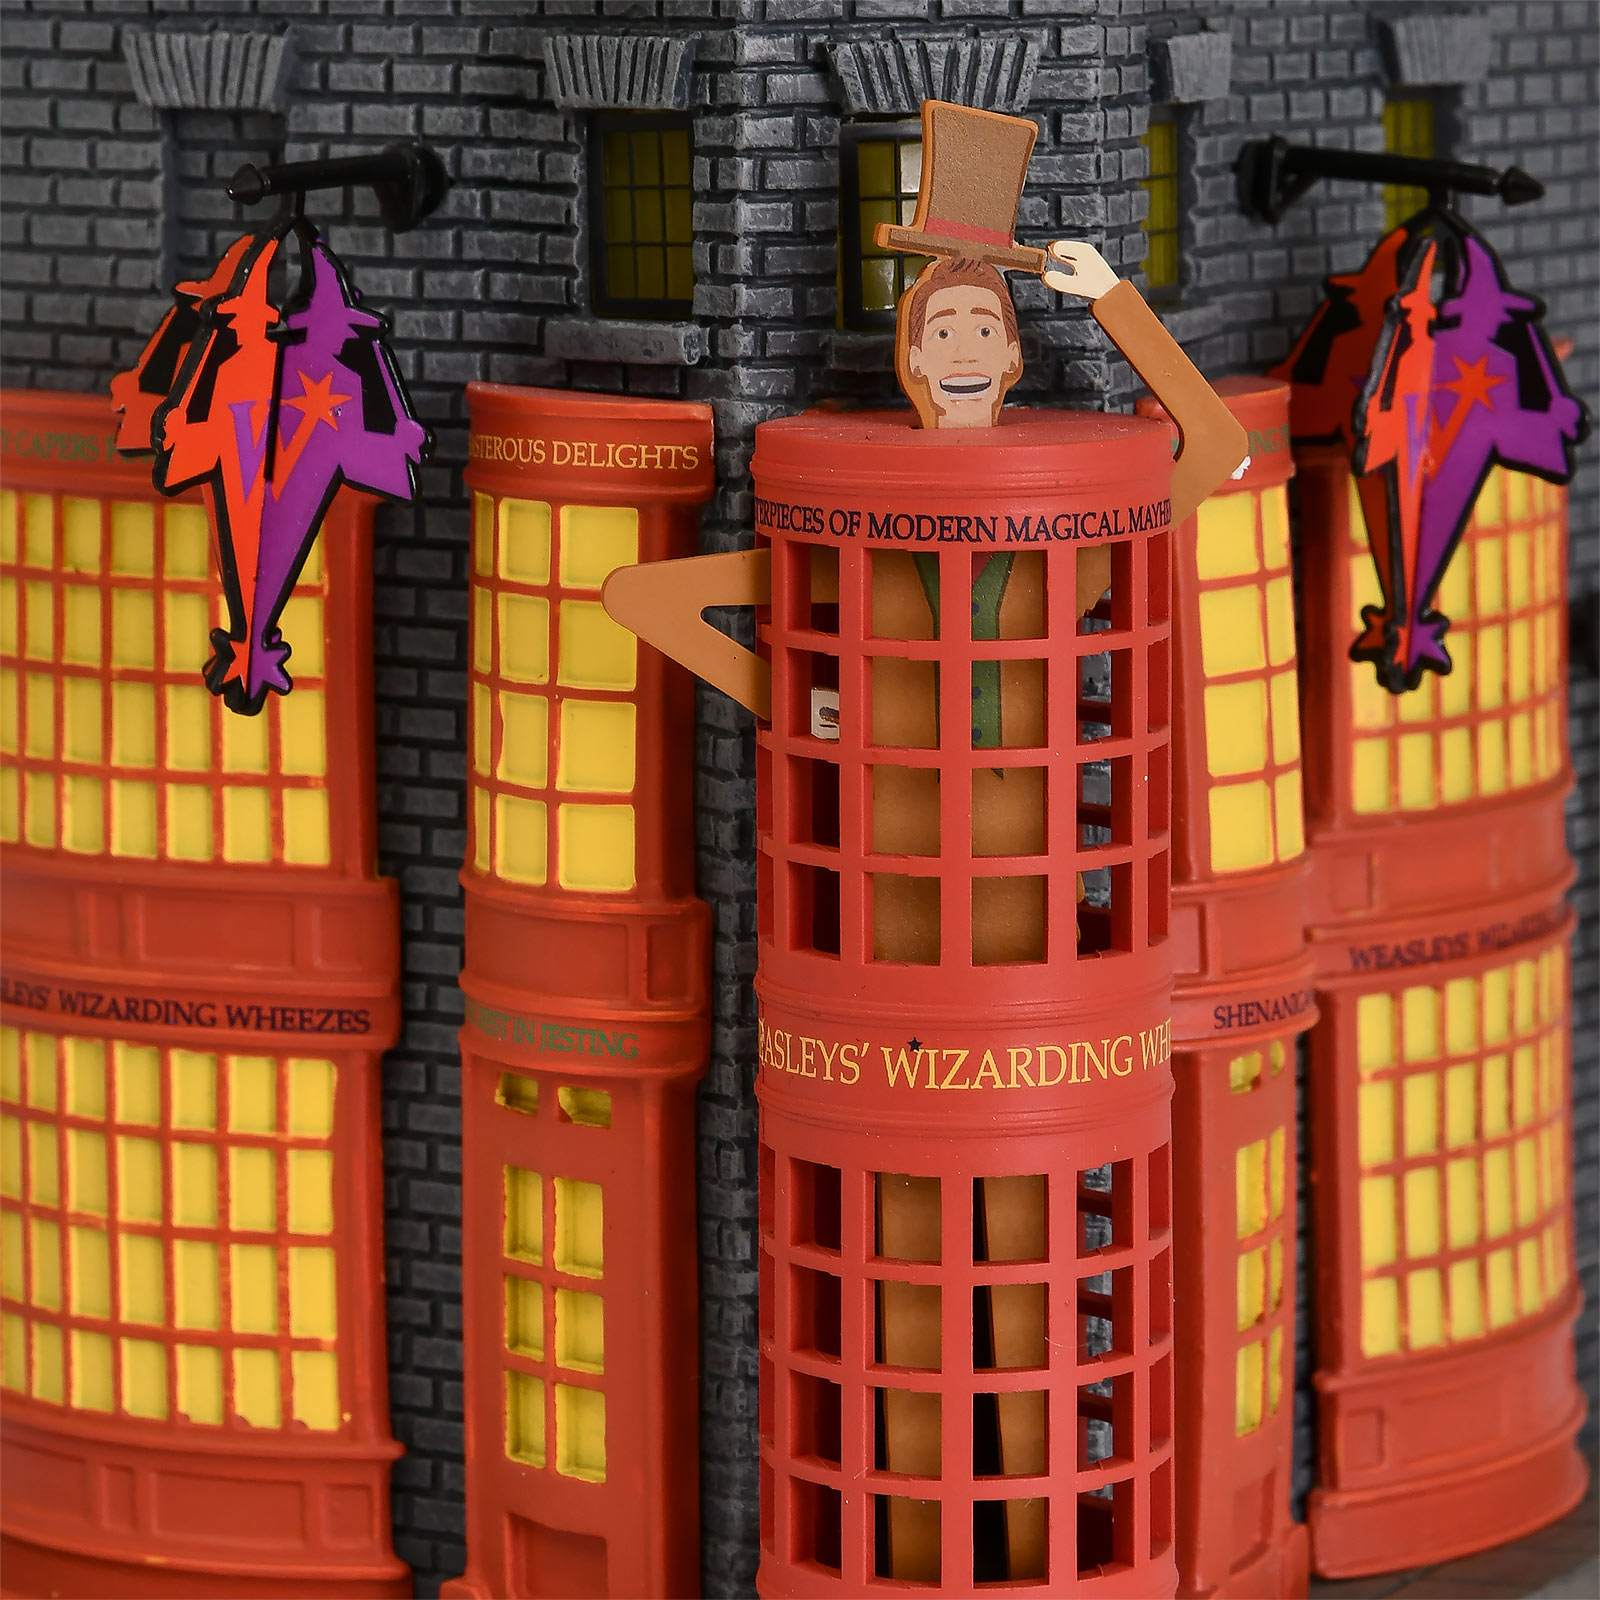 Weasleys Wizarding Wizards Miniature Replica with Lighting - Harry Potter